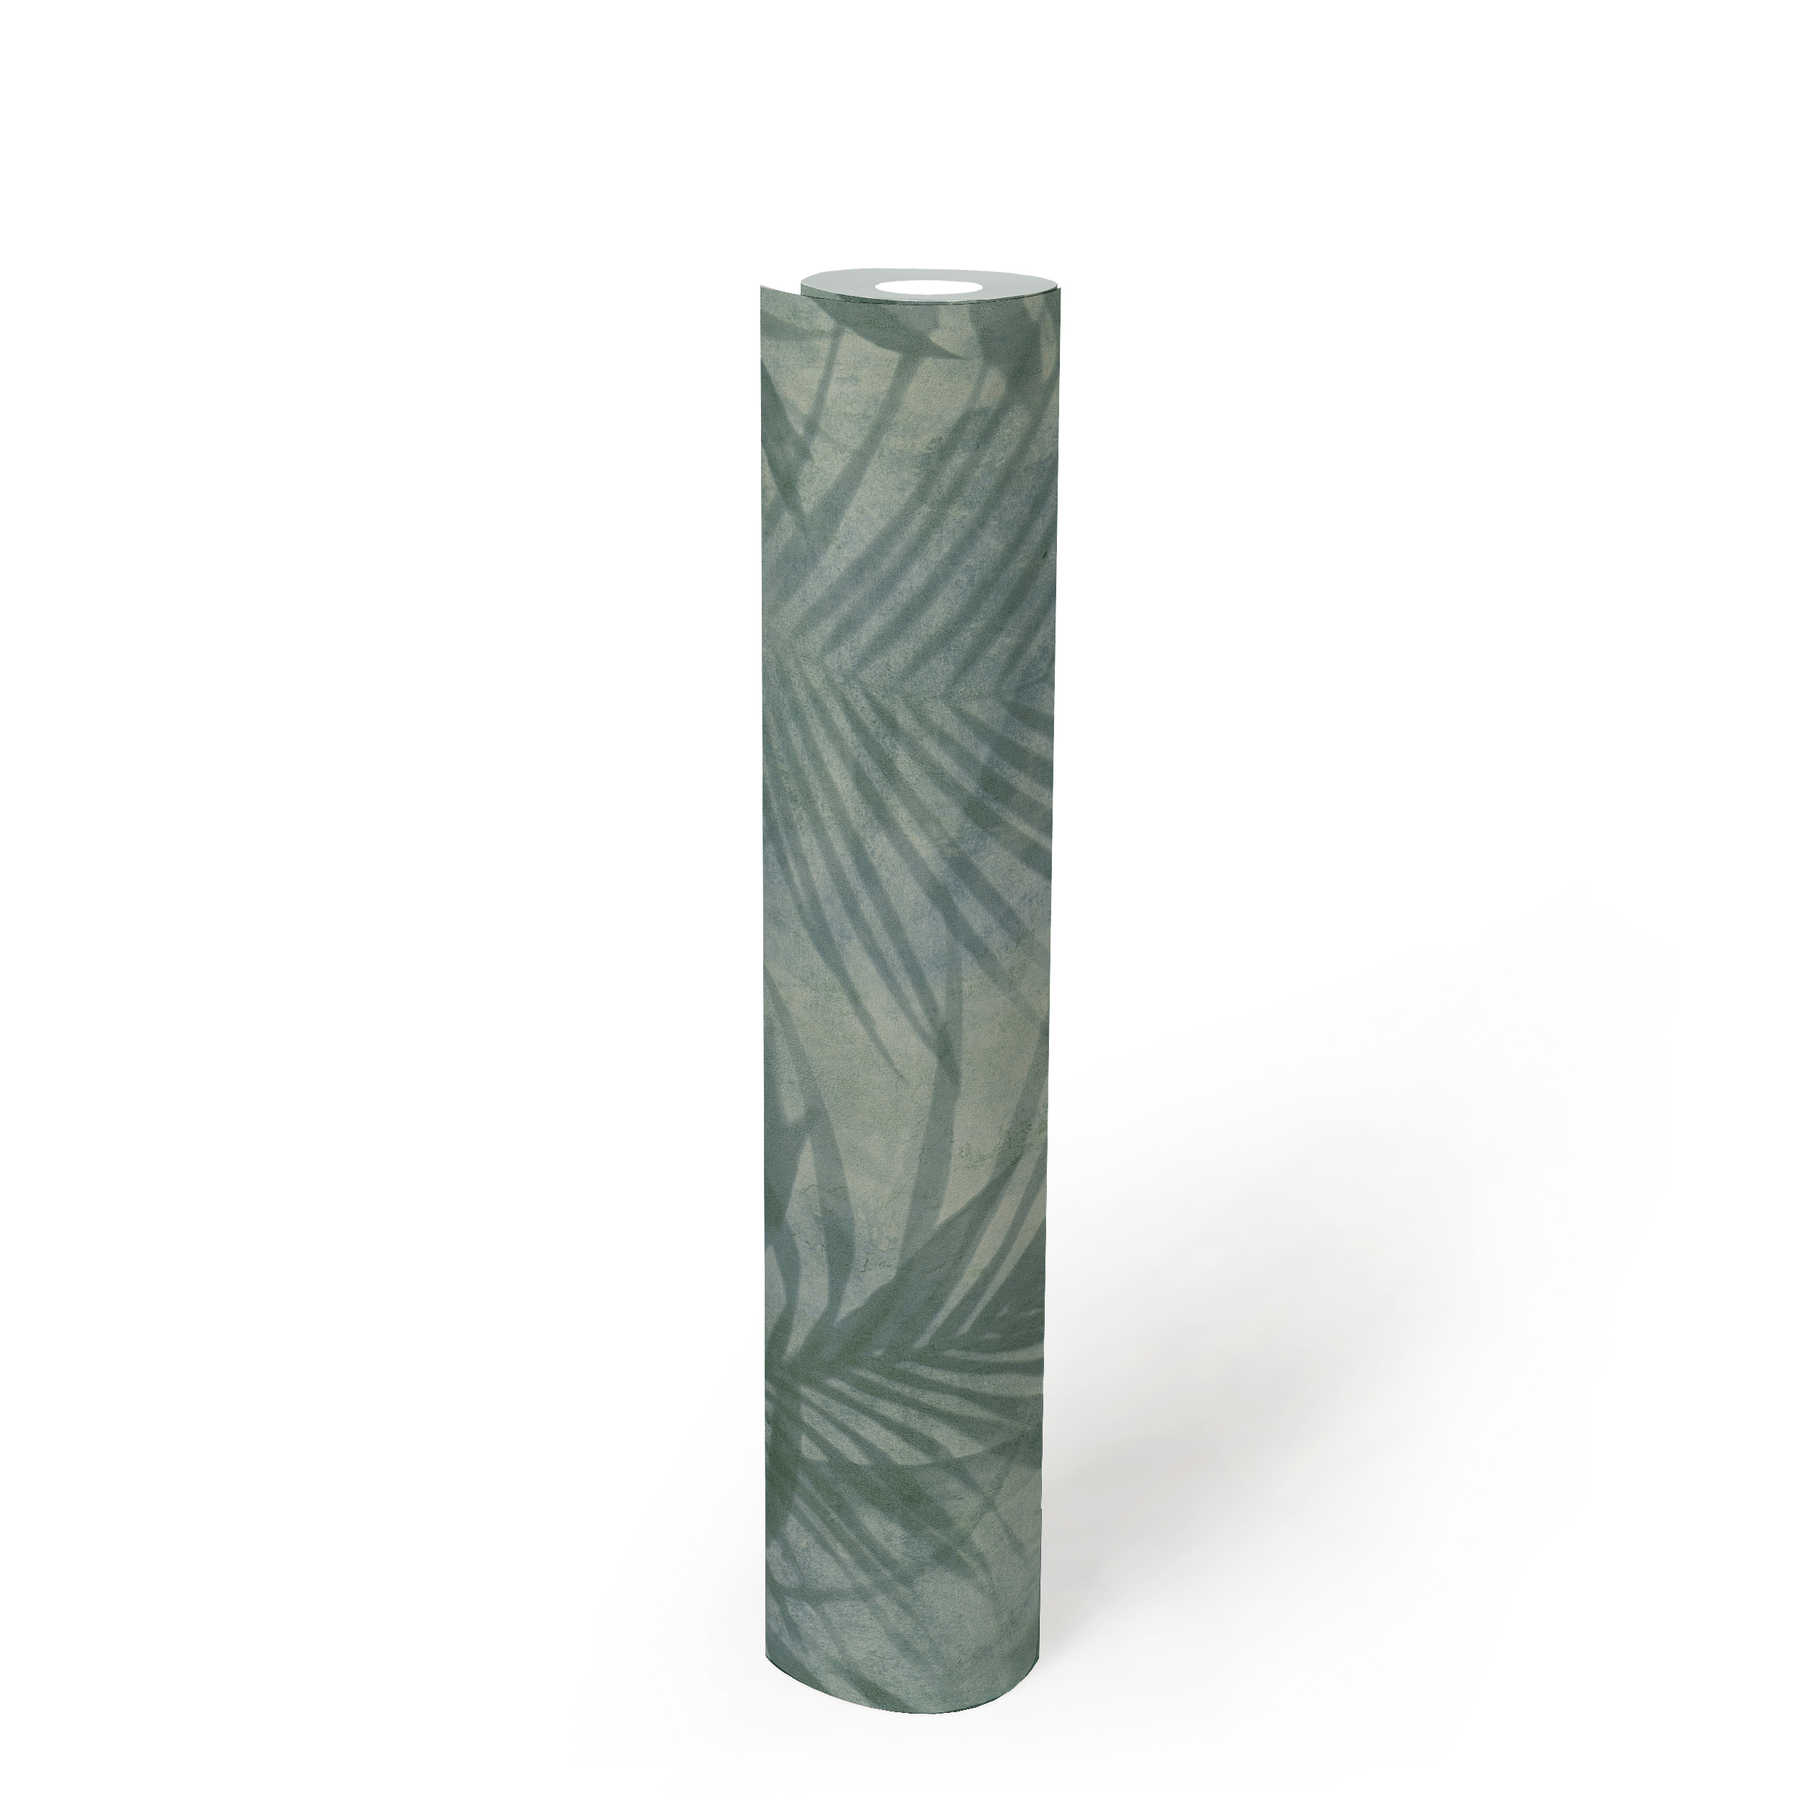             Wallpaper palm tree pattern in linen look - green, blue, grey
        